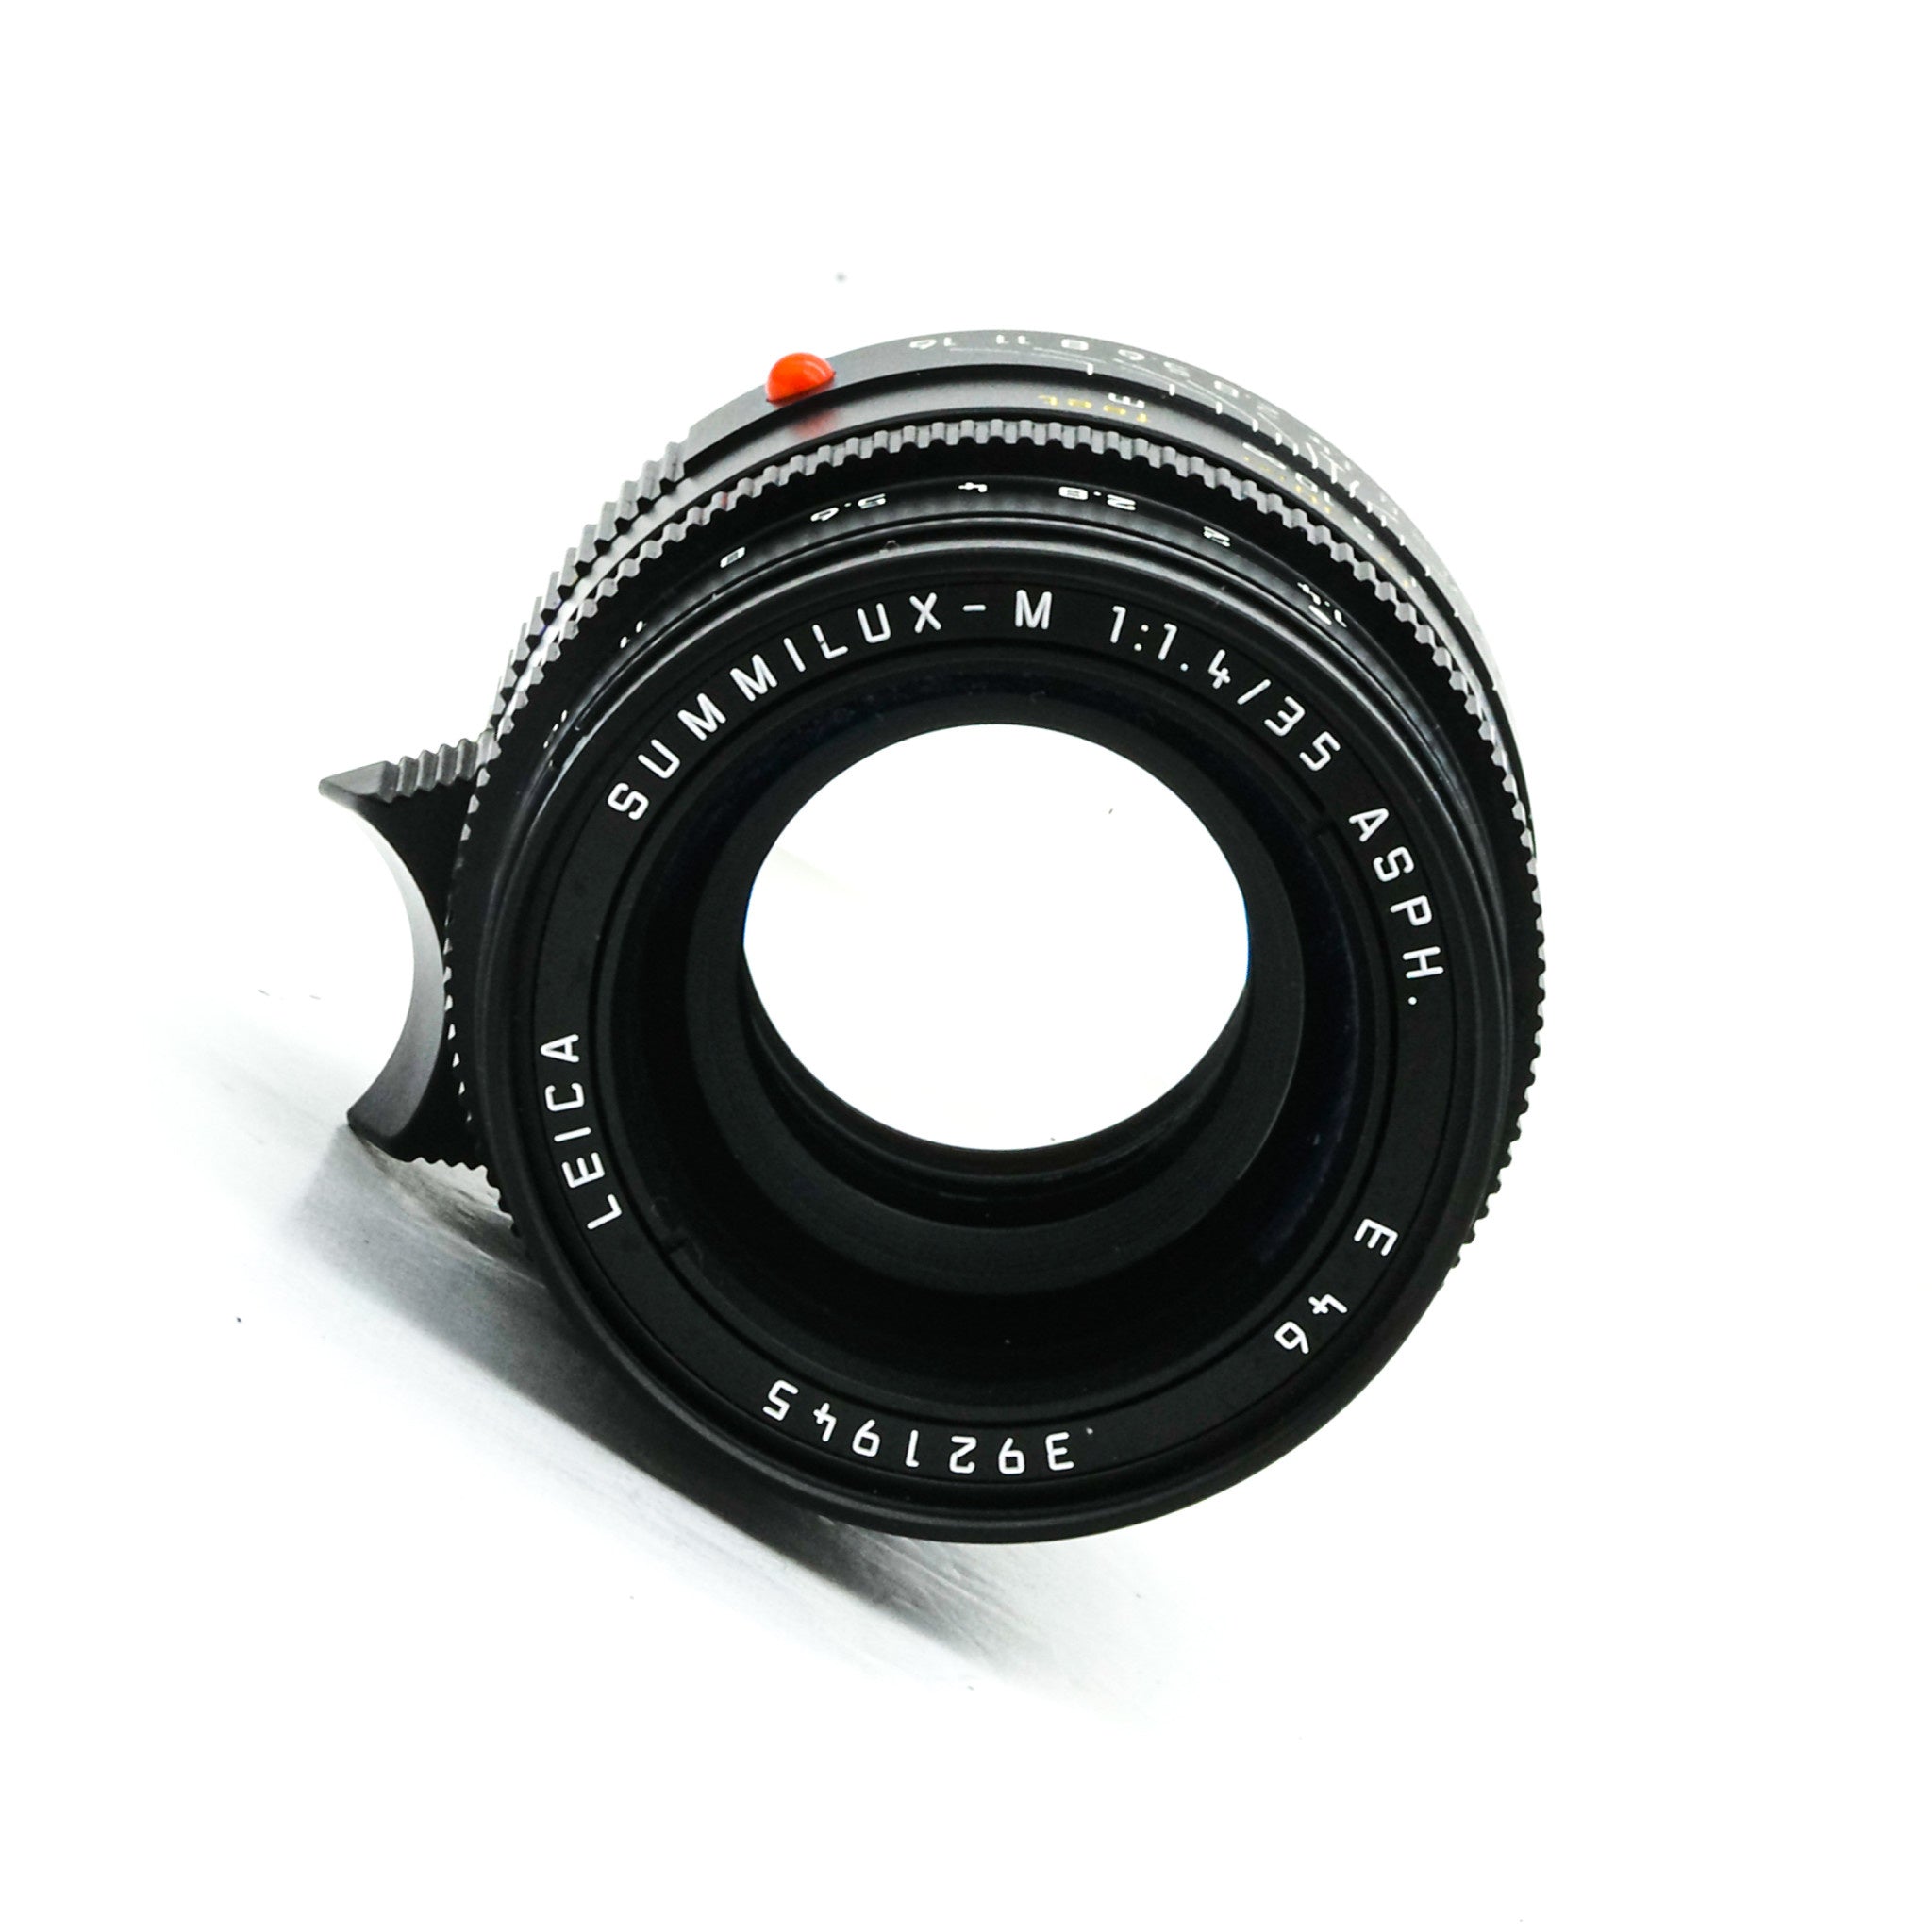 35mm f/1.4 Summilux-M